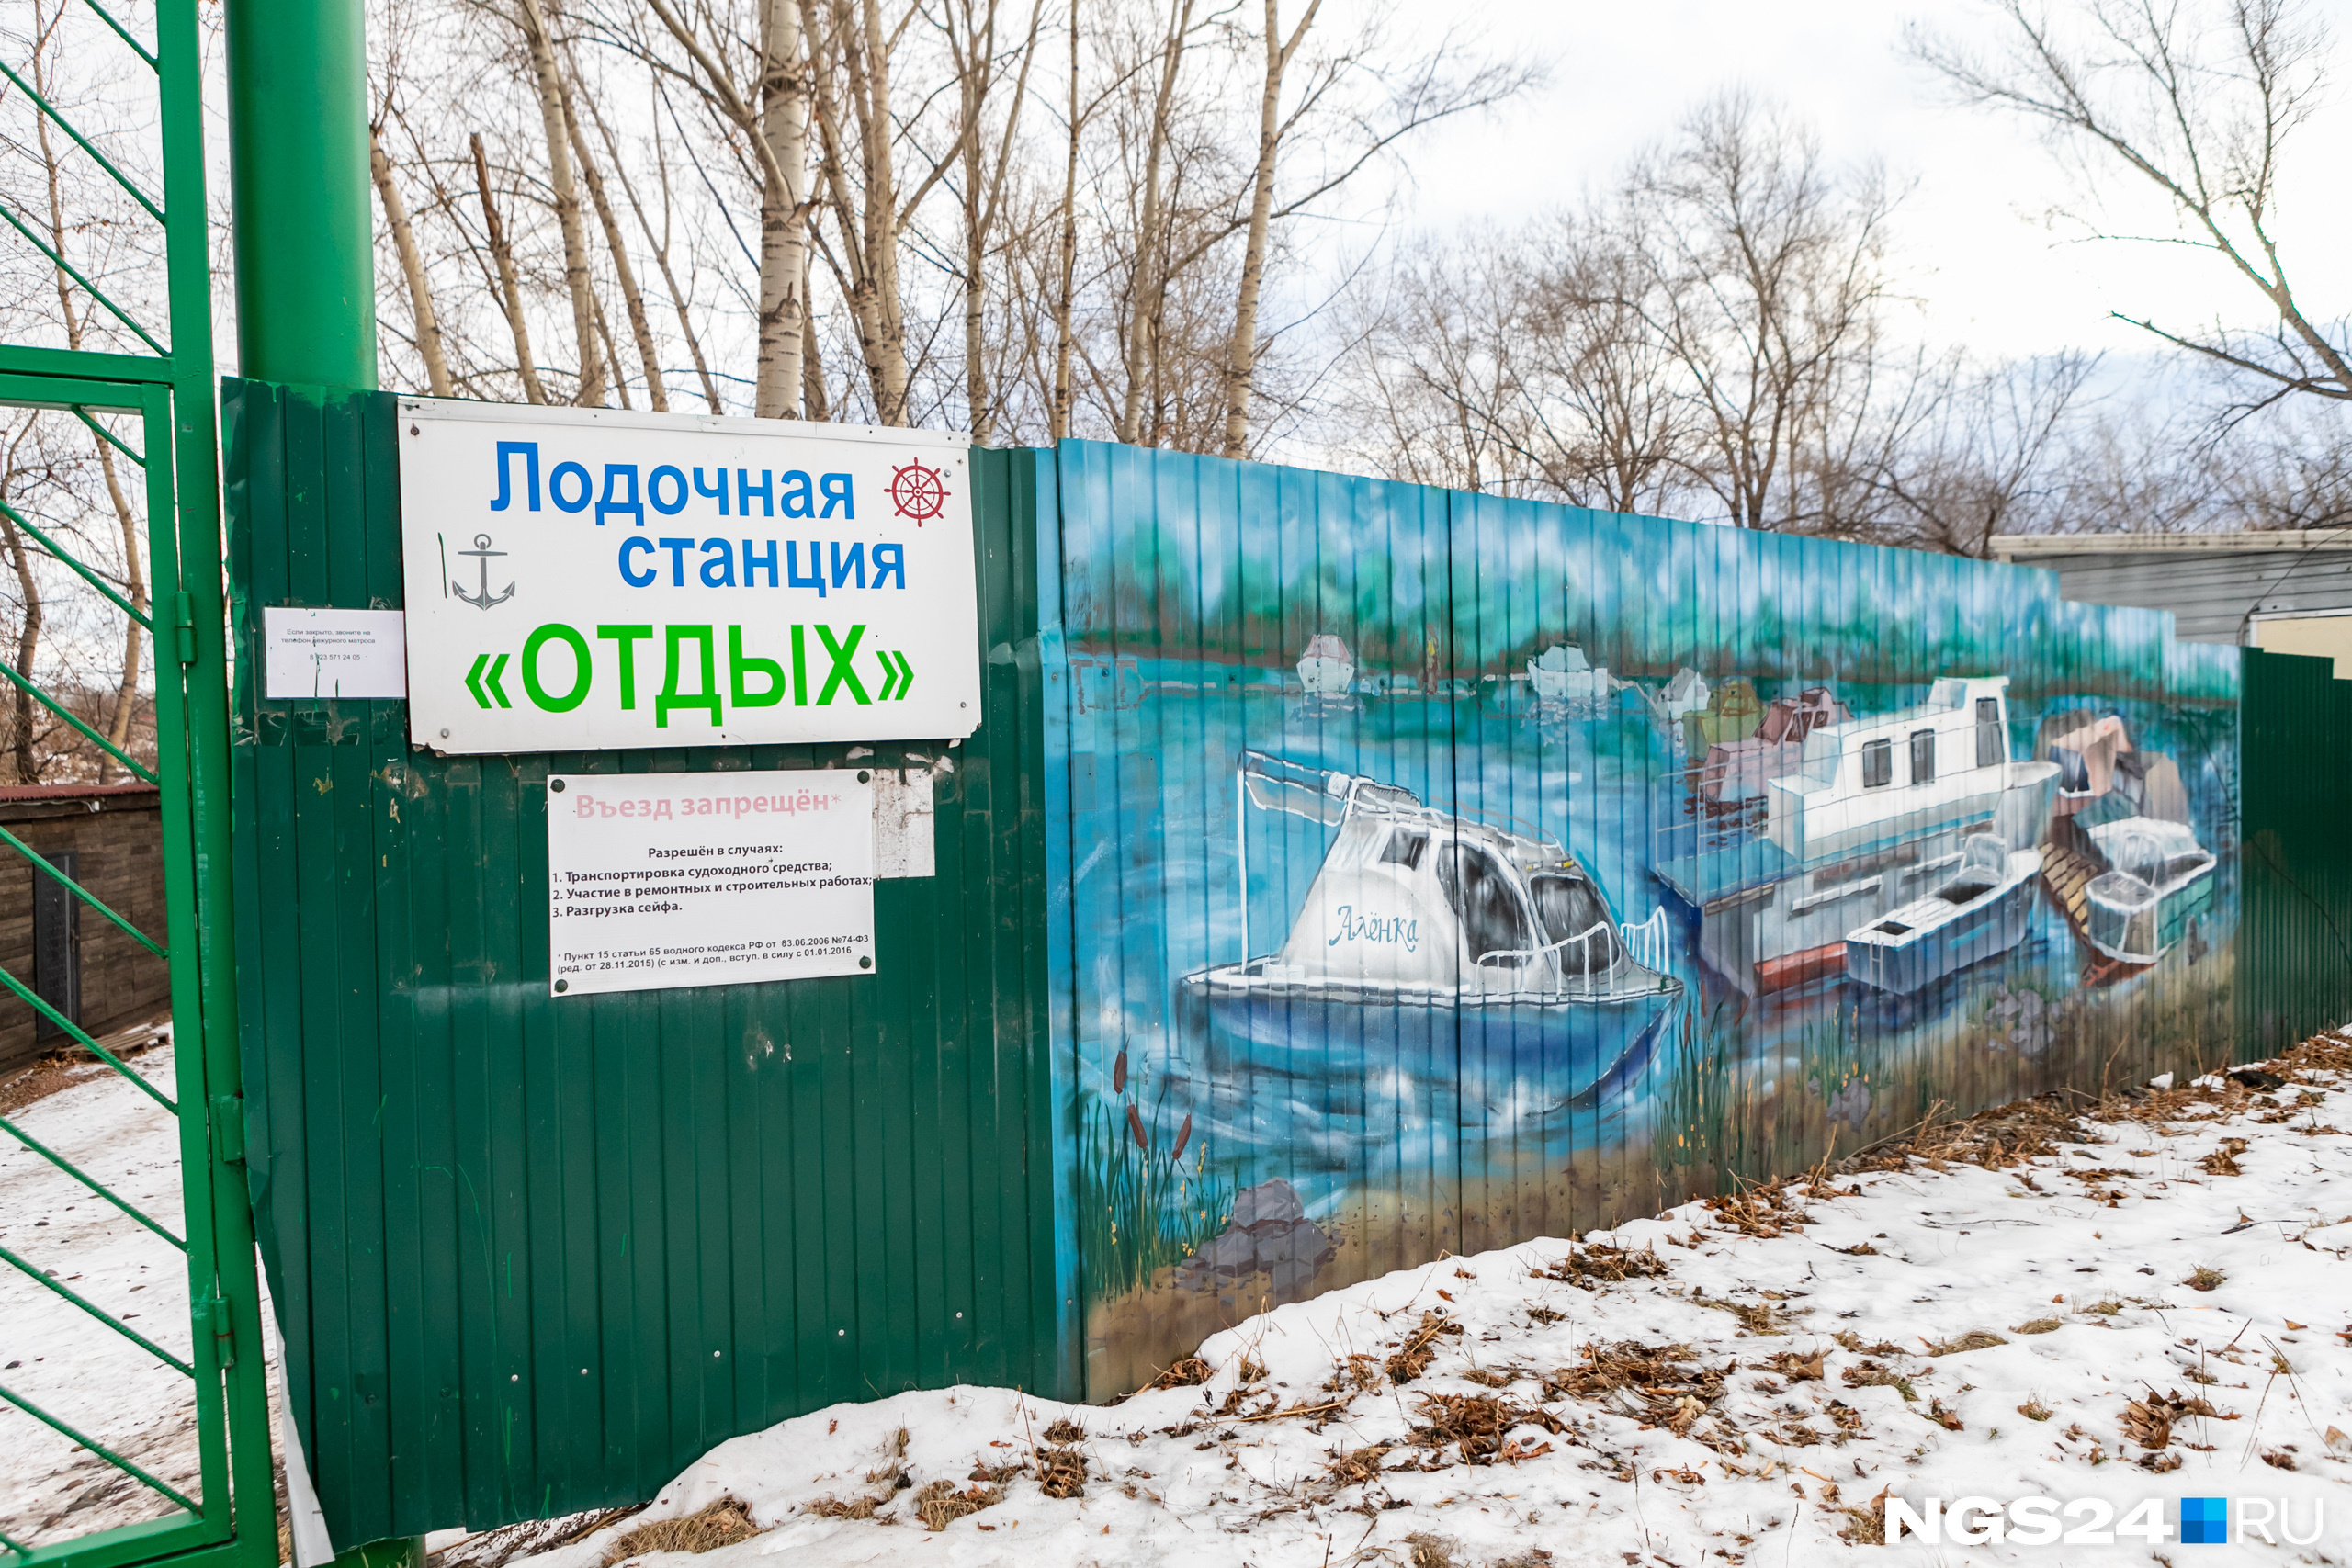 Вот за эту картину лодочникам выставили штраф в 50 тысяч рублей и указали на ржавчину на заборе